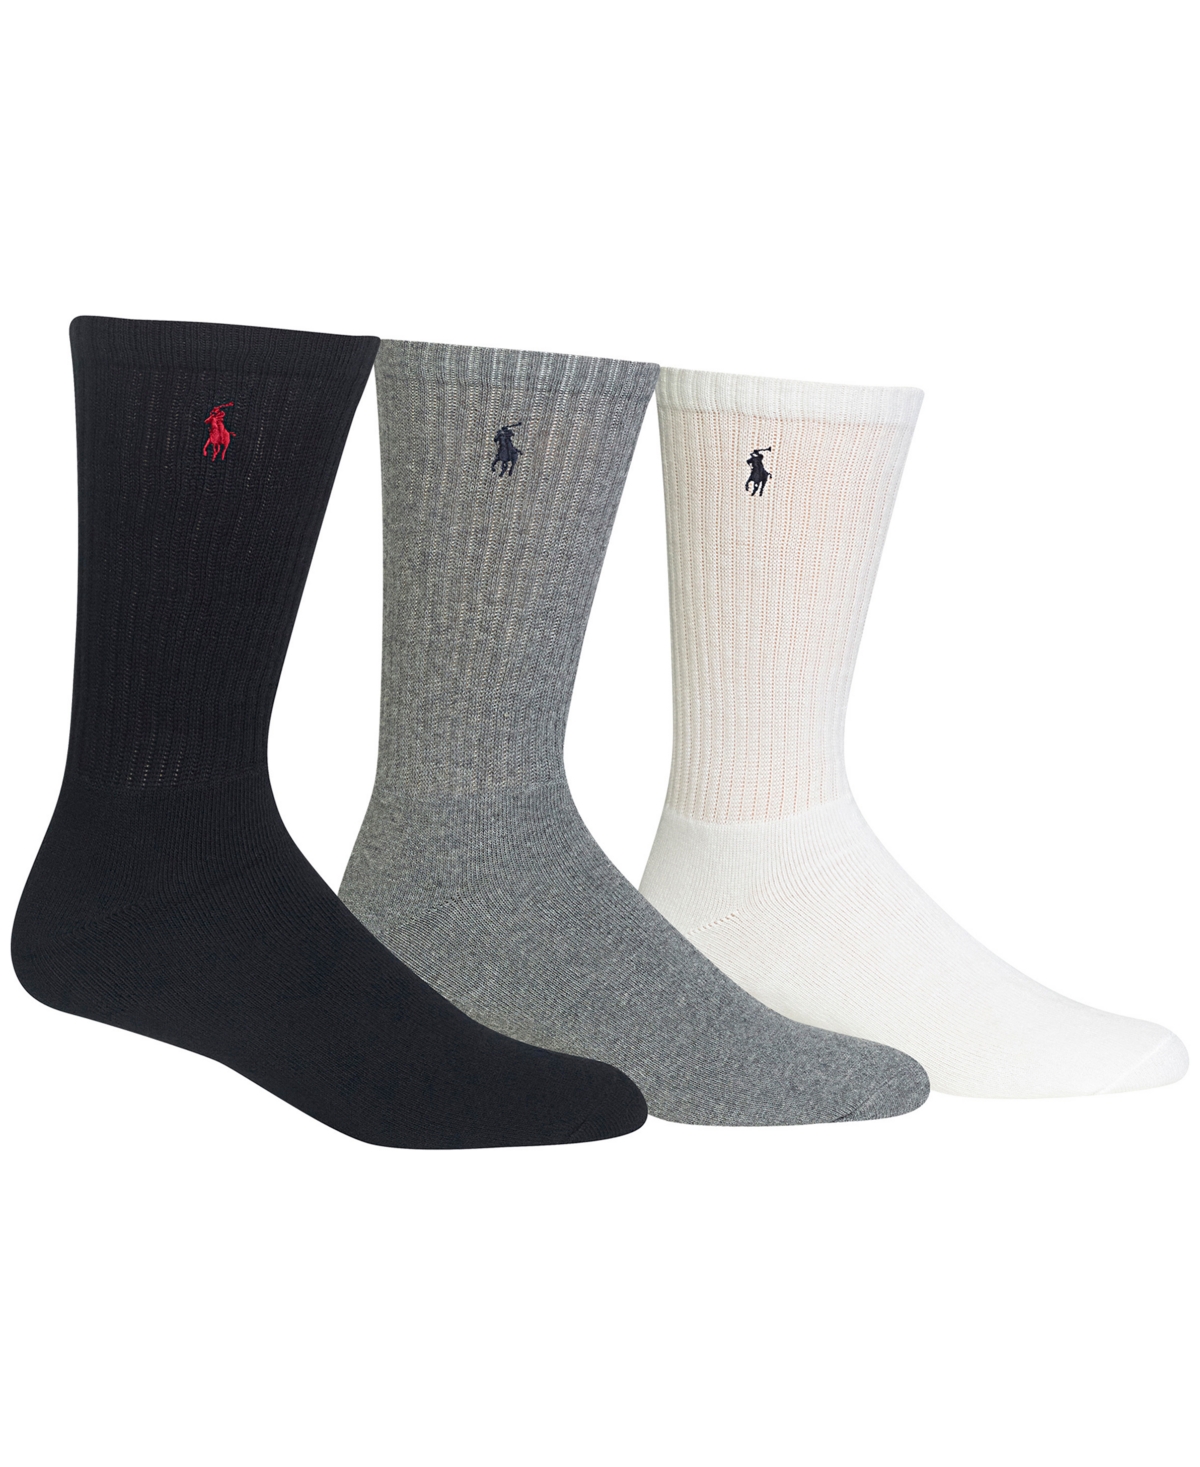 Polo Ralph Lauren Men's 3-pk. Extended Size Athletic Crew Socks In Black,grey,white